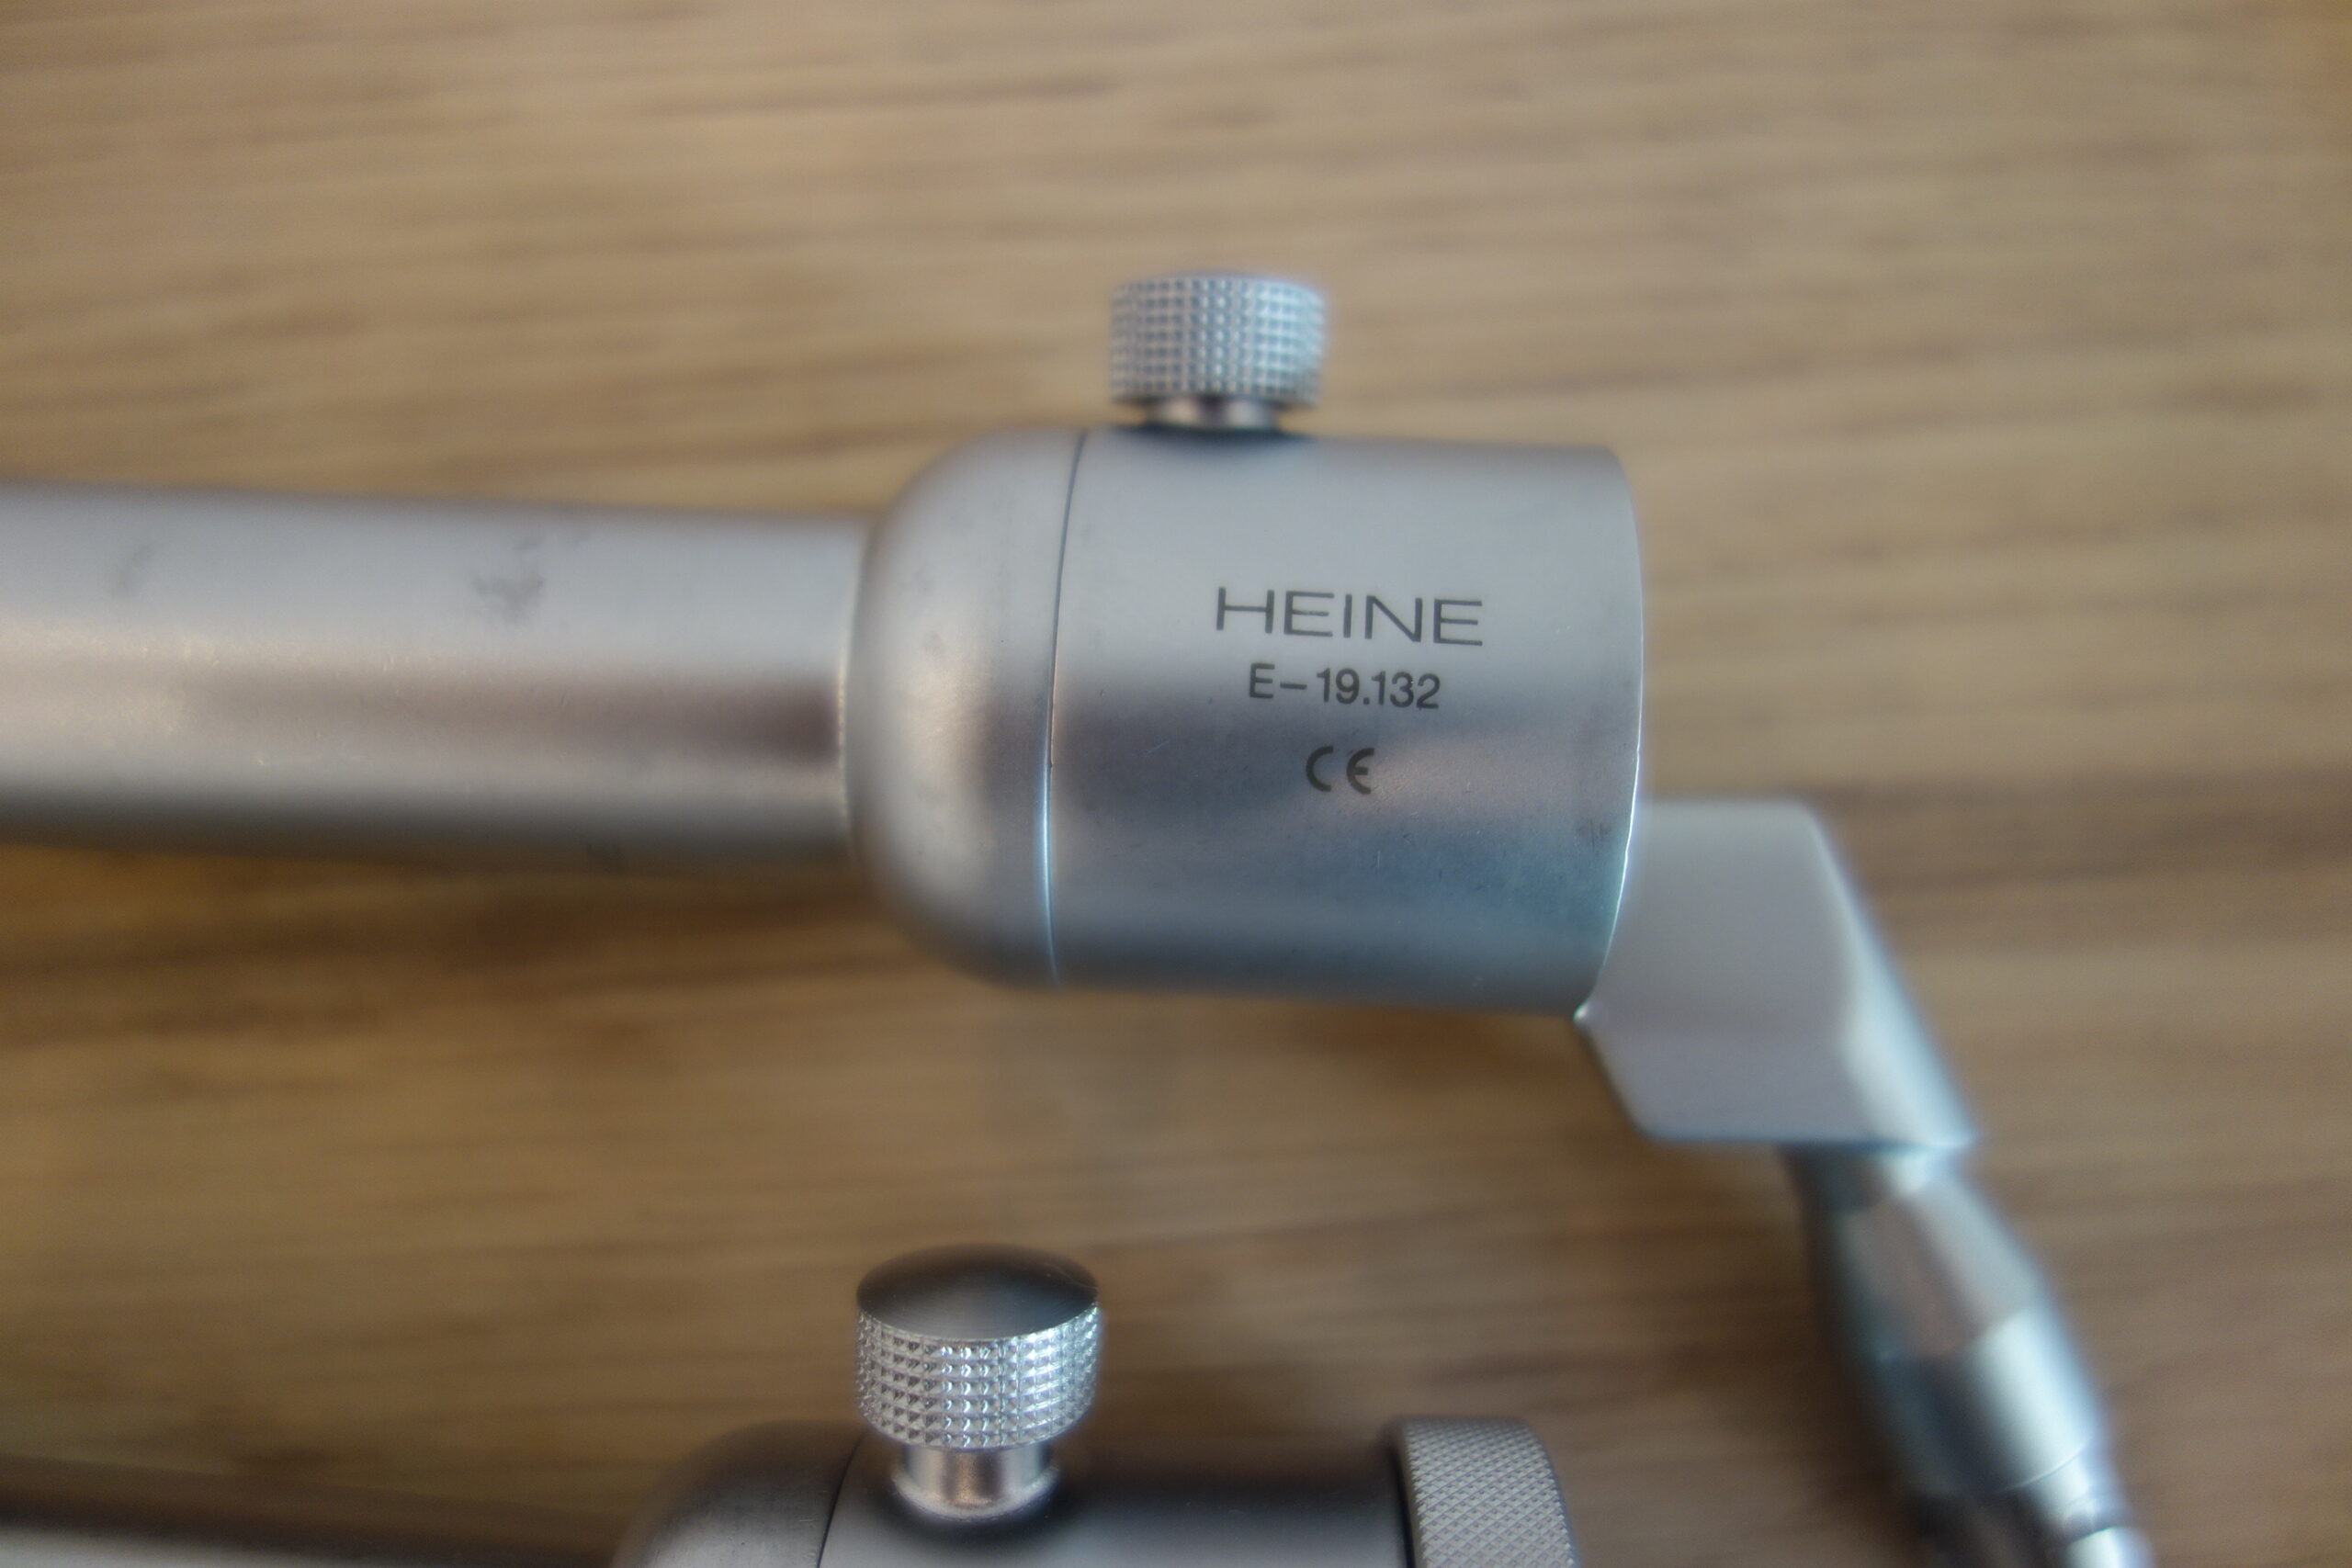 Heine E19.102 + E19.132 Proktoskope 005